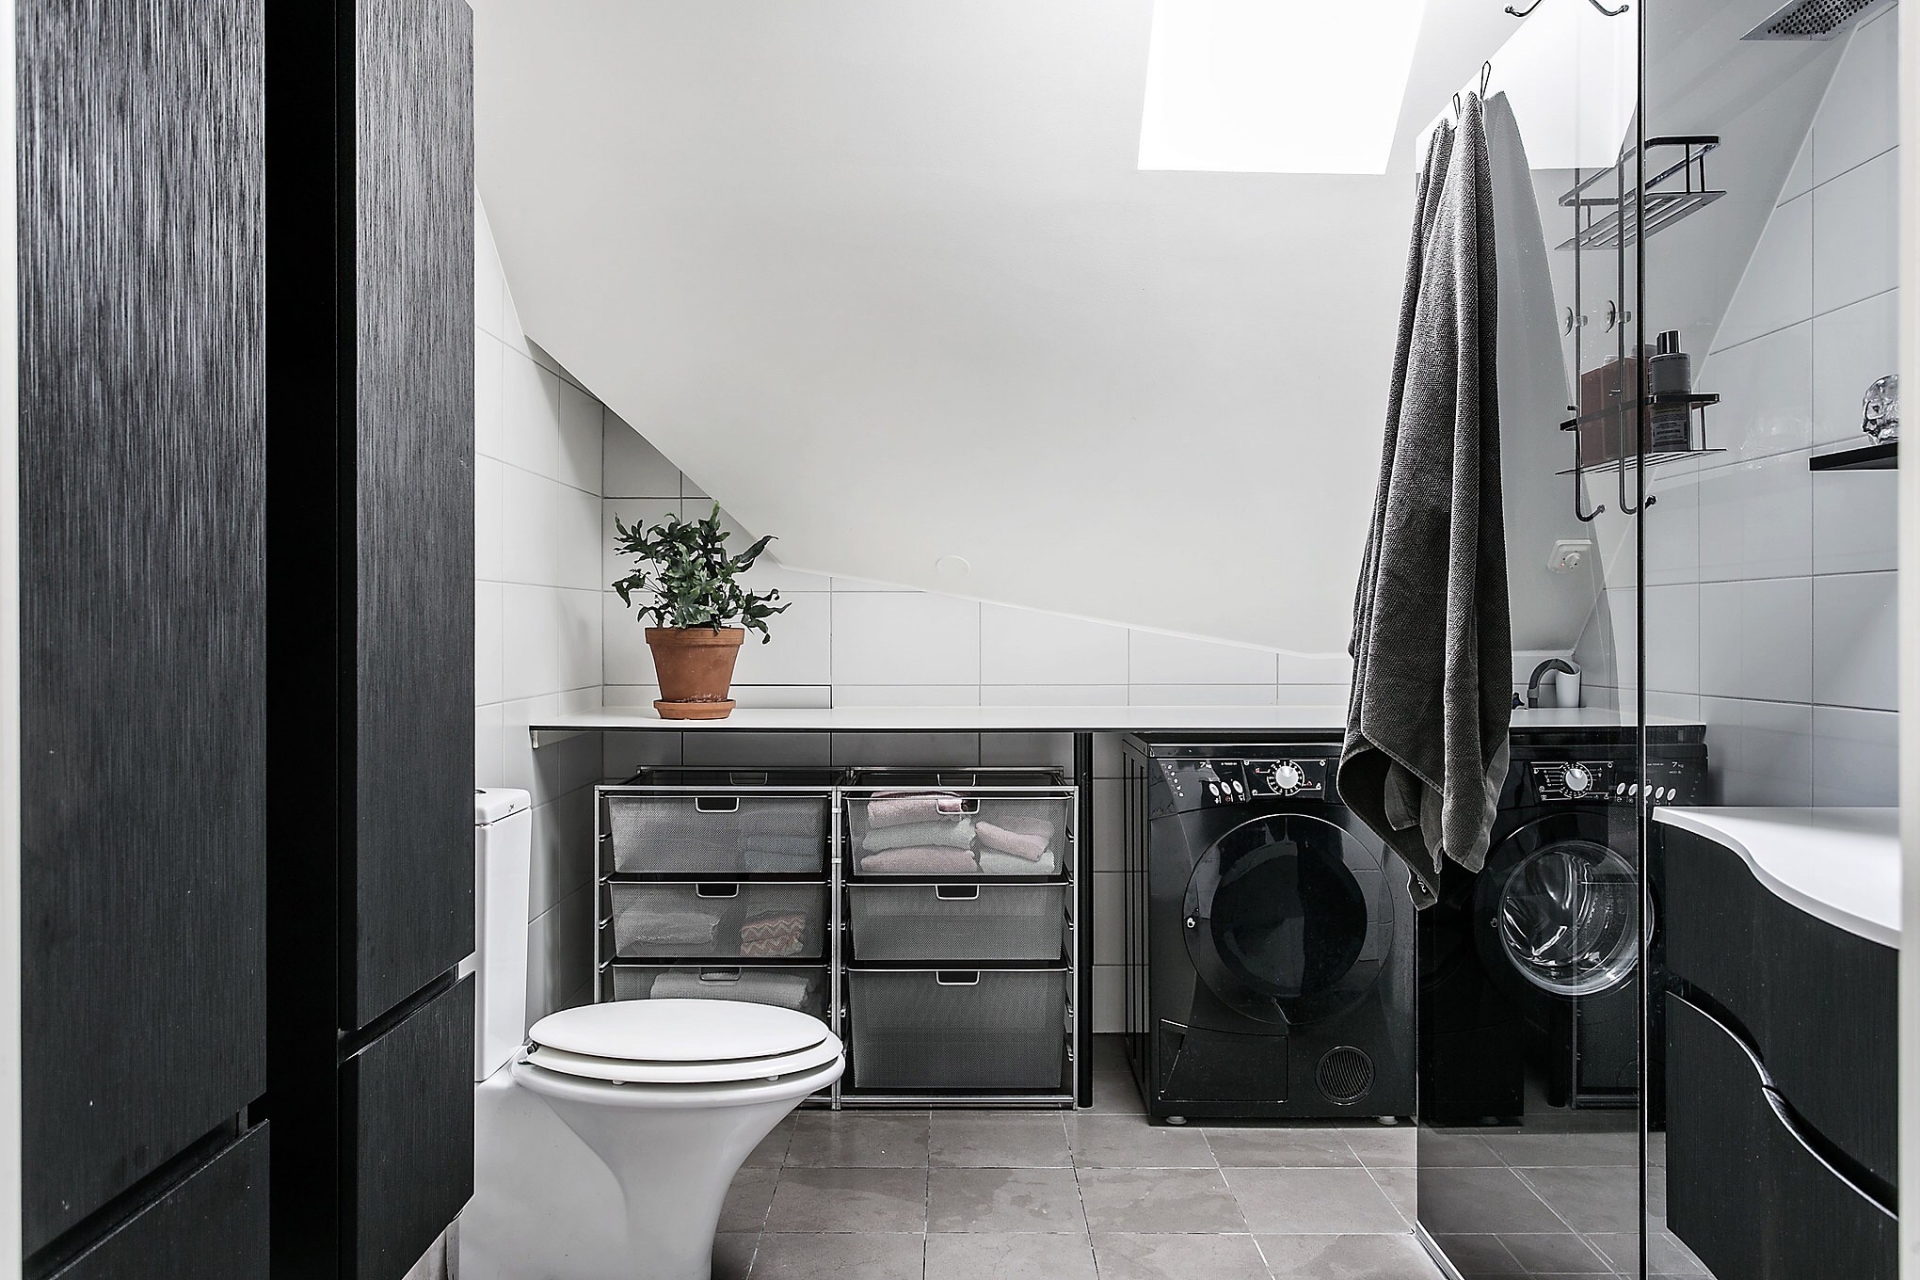 Khu vực nhà vệ sinh kết hợp phòng giặt ủi tiện lợi cho cả gia đình. Máy giặt và hệ tủ lưu trữ màu đen trở nên nổi bật giữa trần - tường trắng và sàn lát gạch xám.